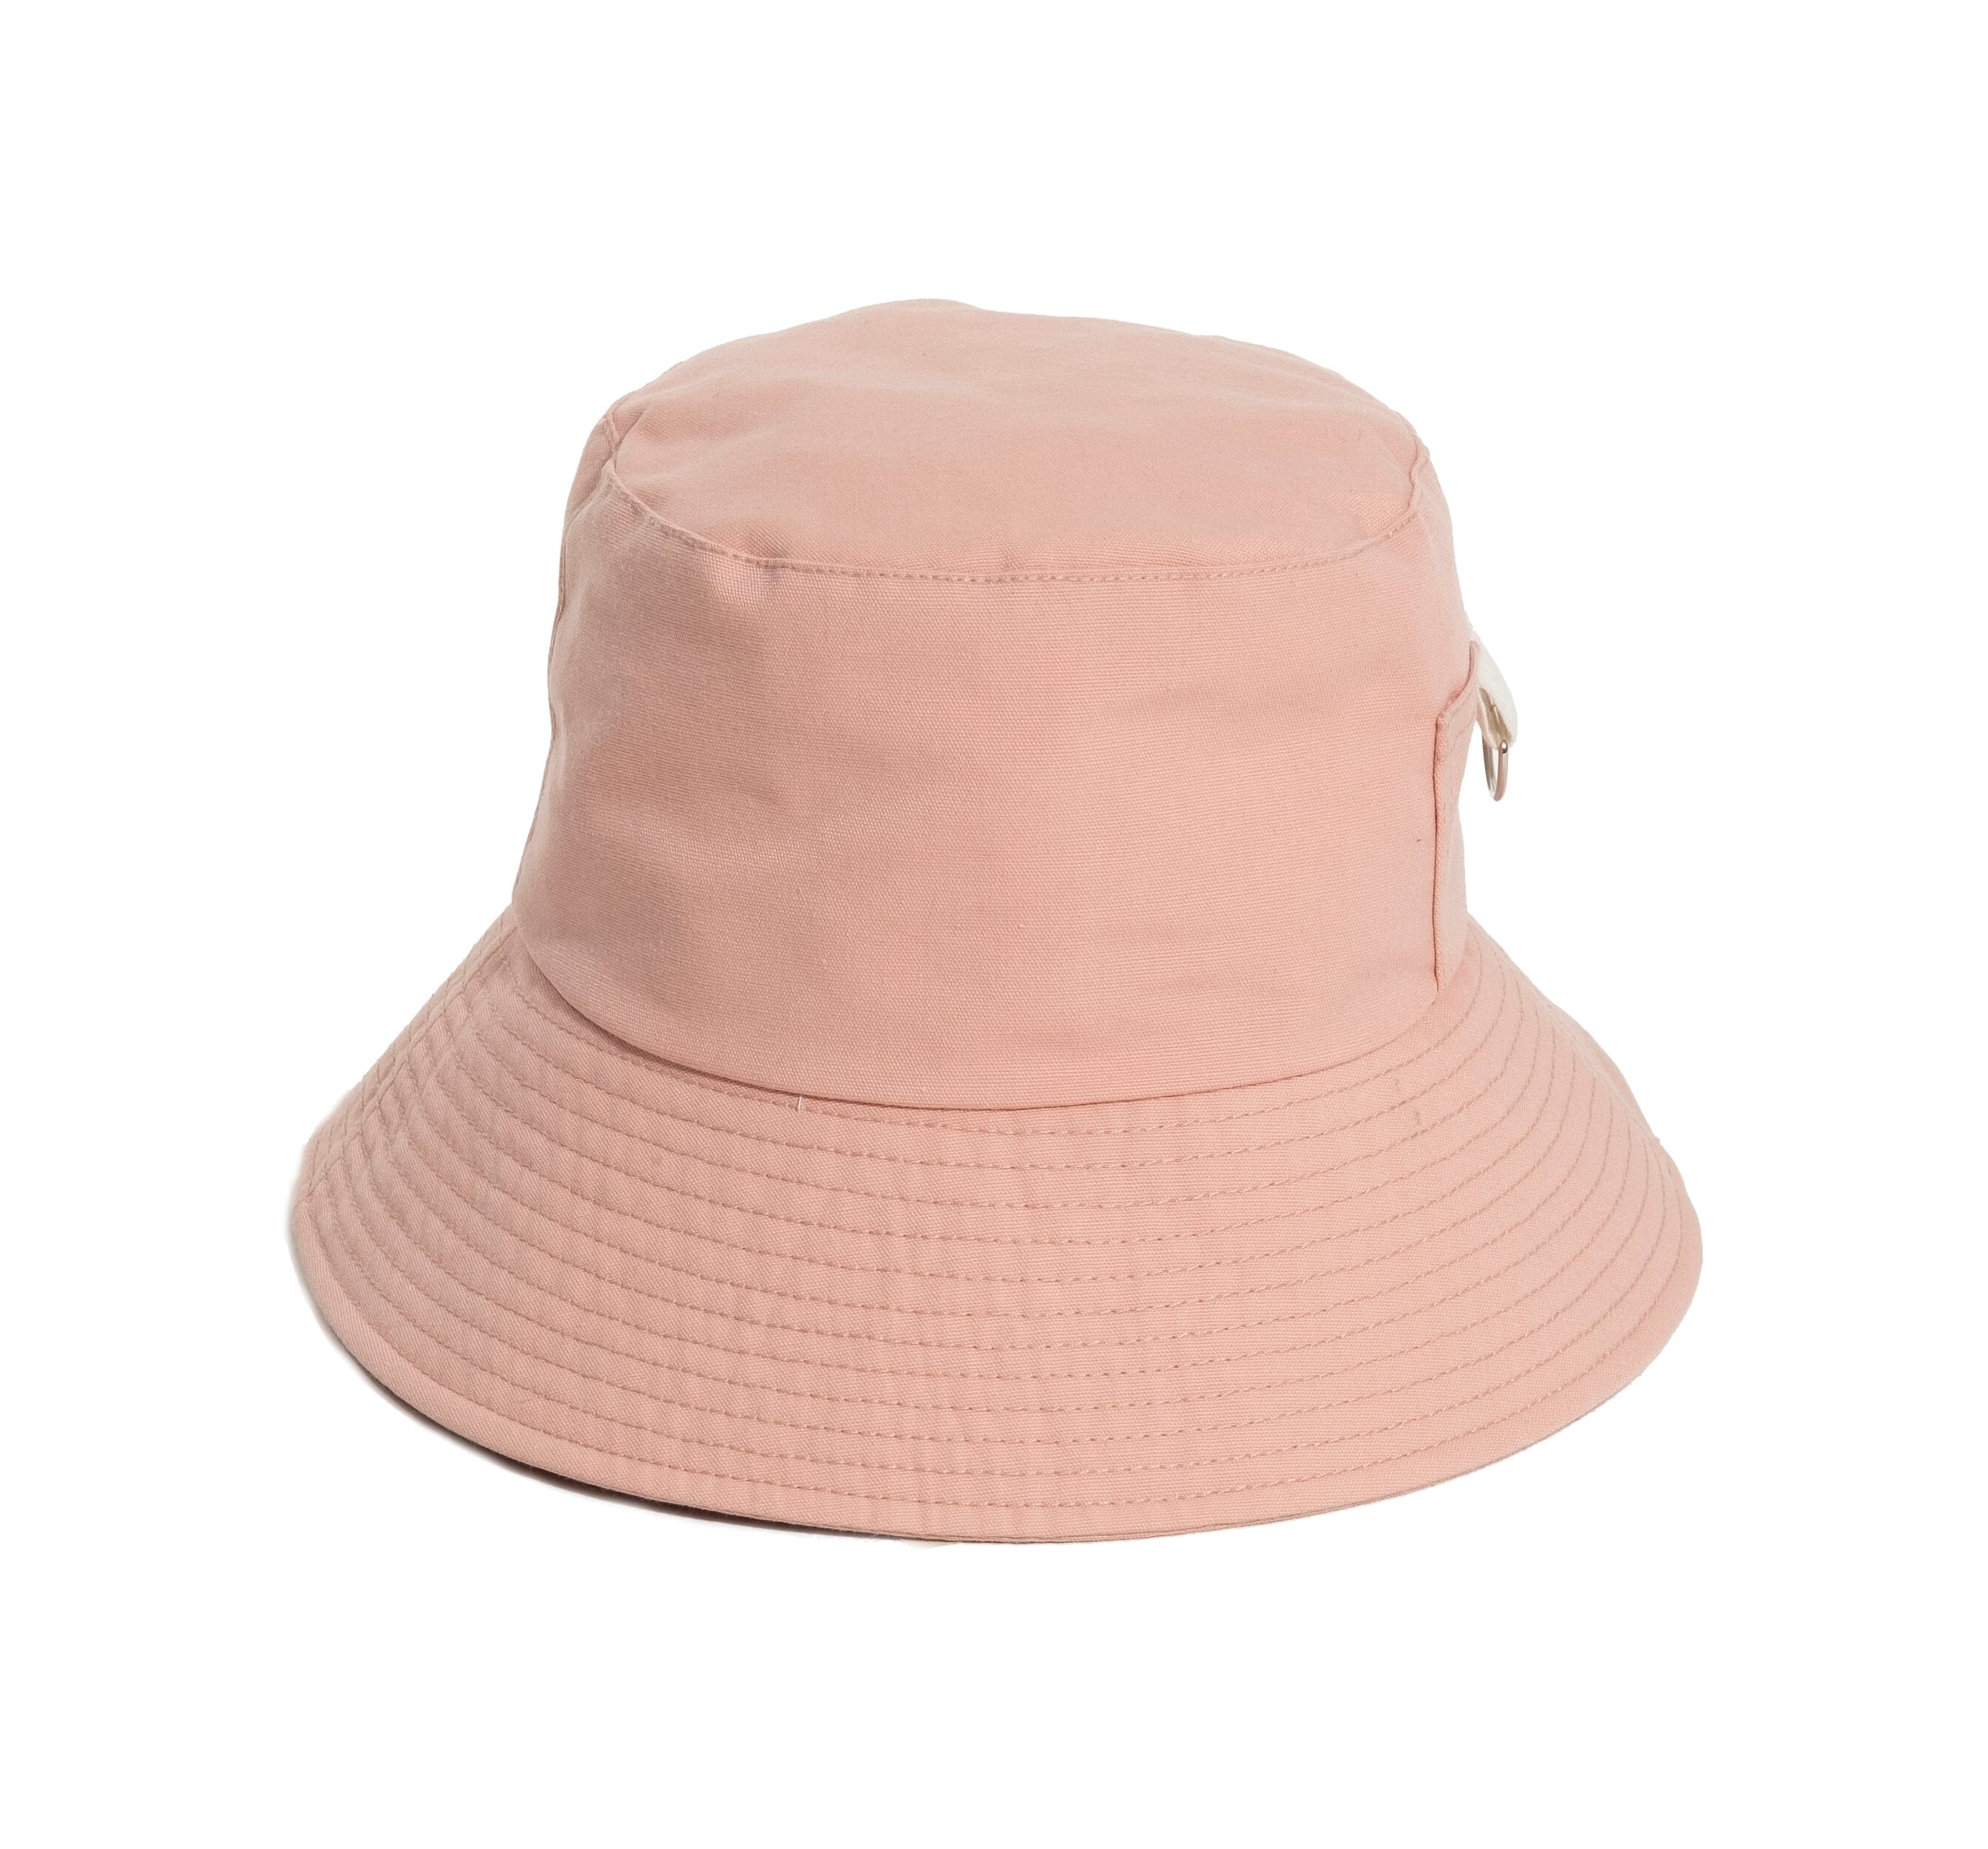 The Bucket Hat - Dusty Pink Hats Business & Pleasure Co 